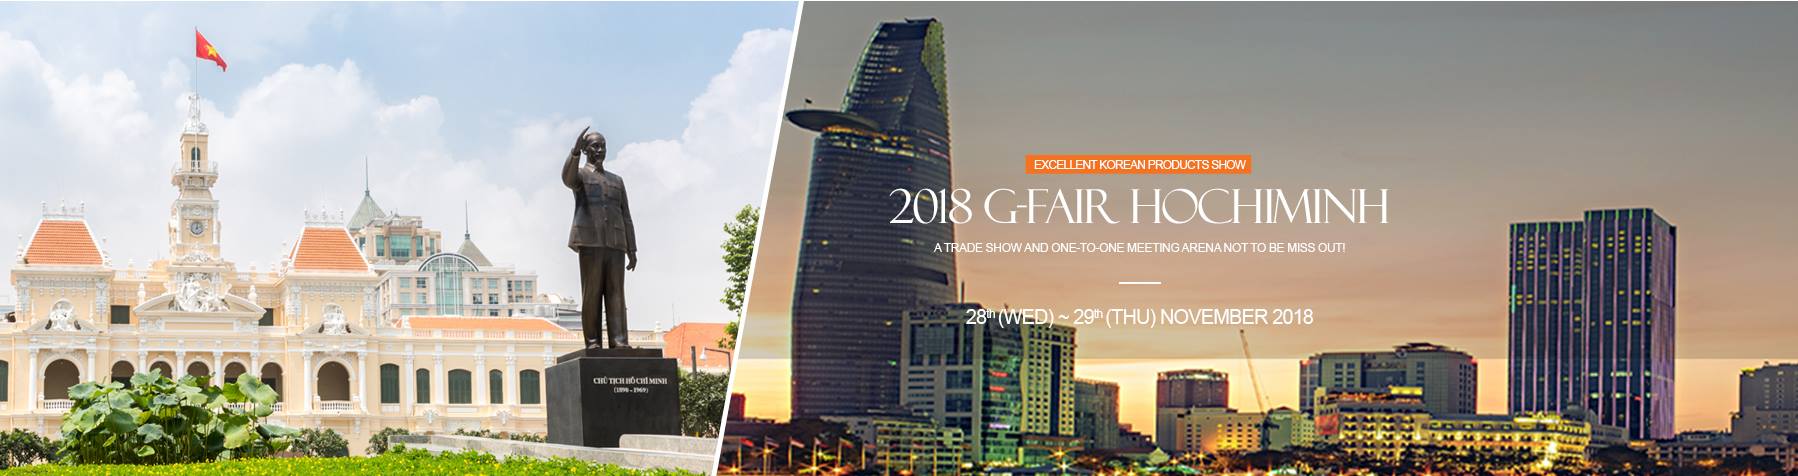 Hội chợ triển lãm G-FAIR Hàn Quốc tại TP.Hồ Chí Minh năm 2018 - 2